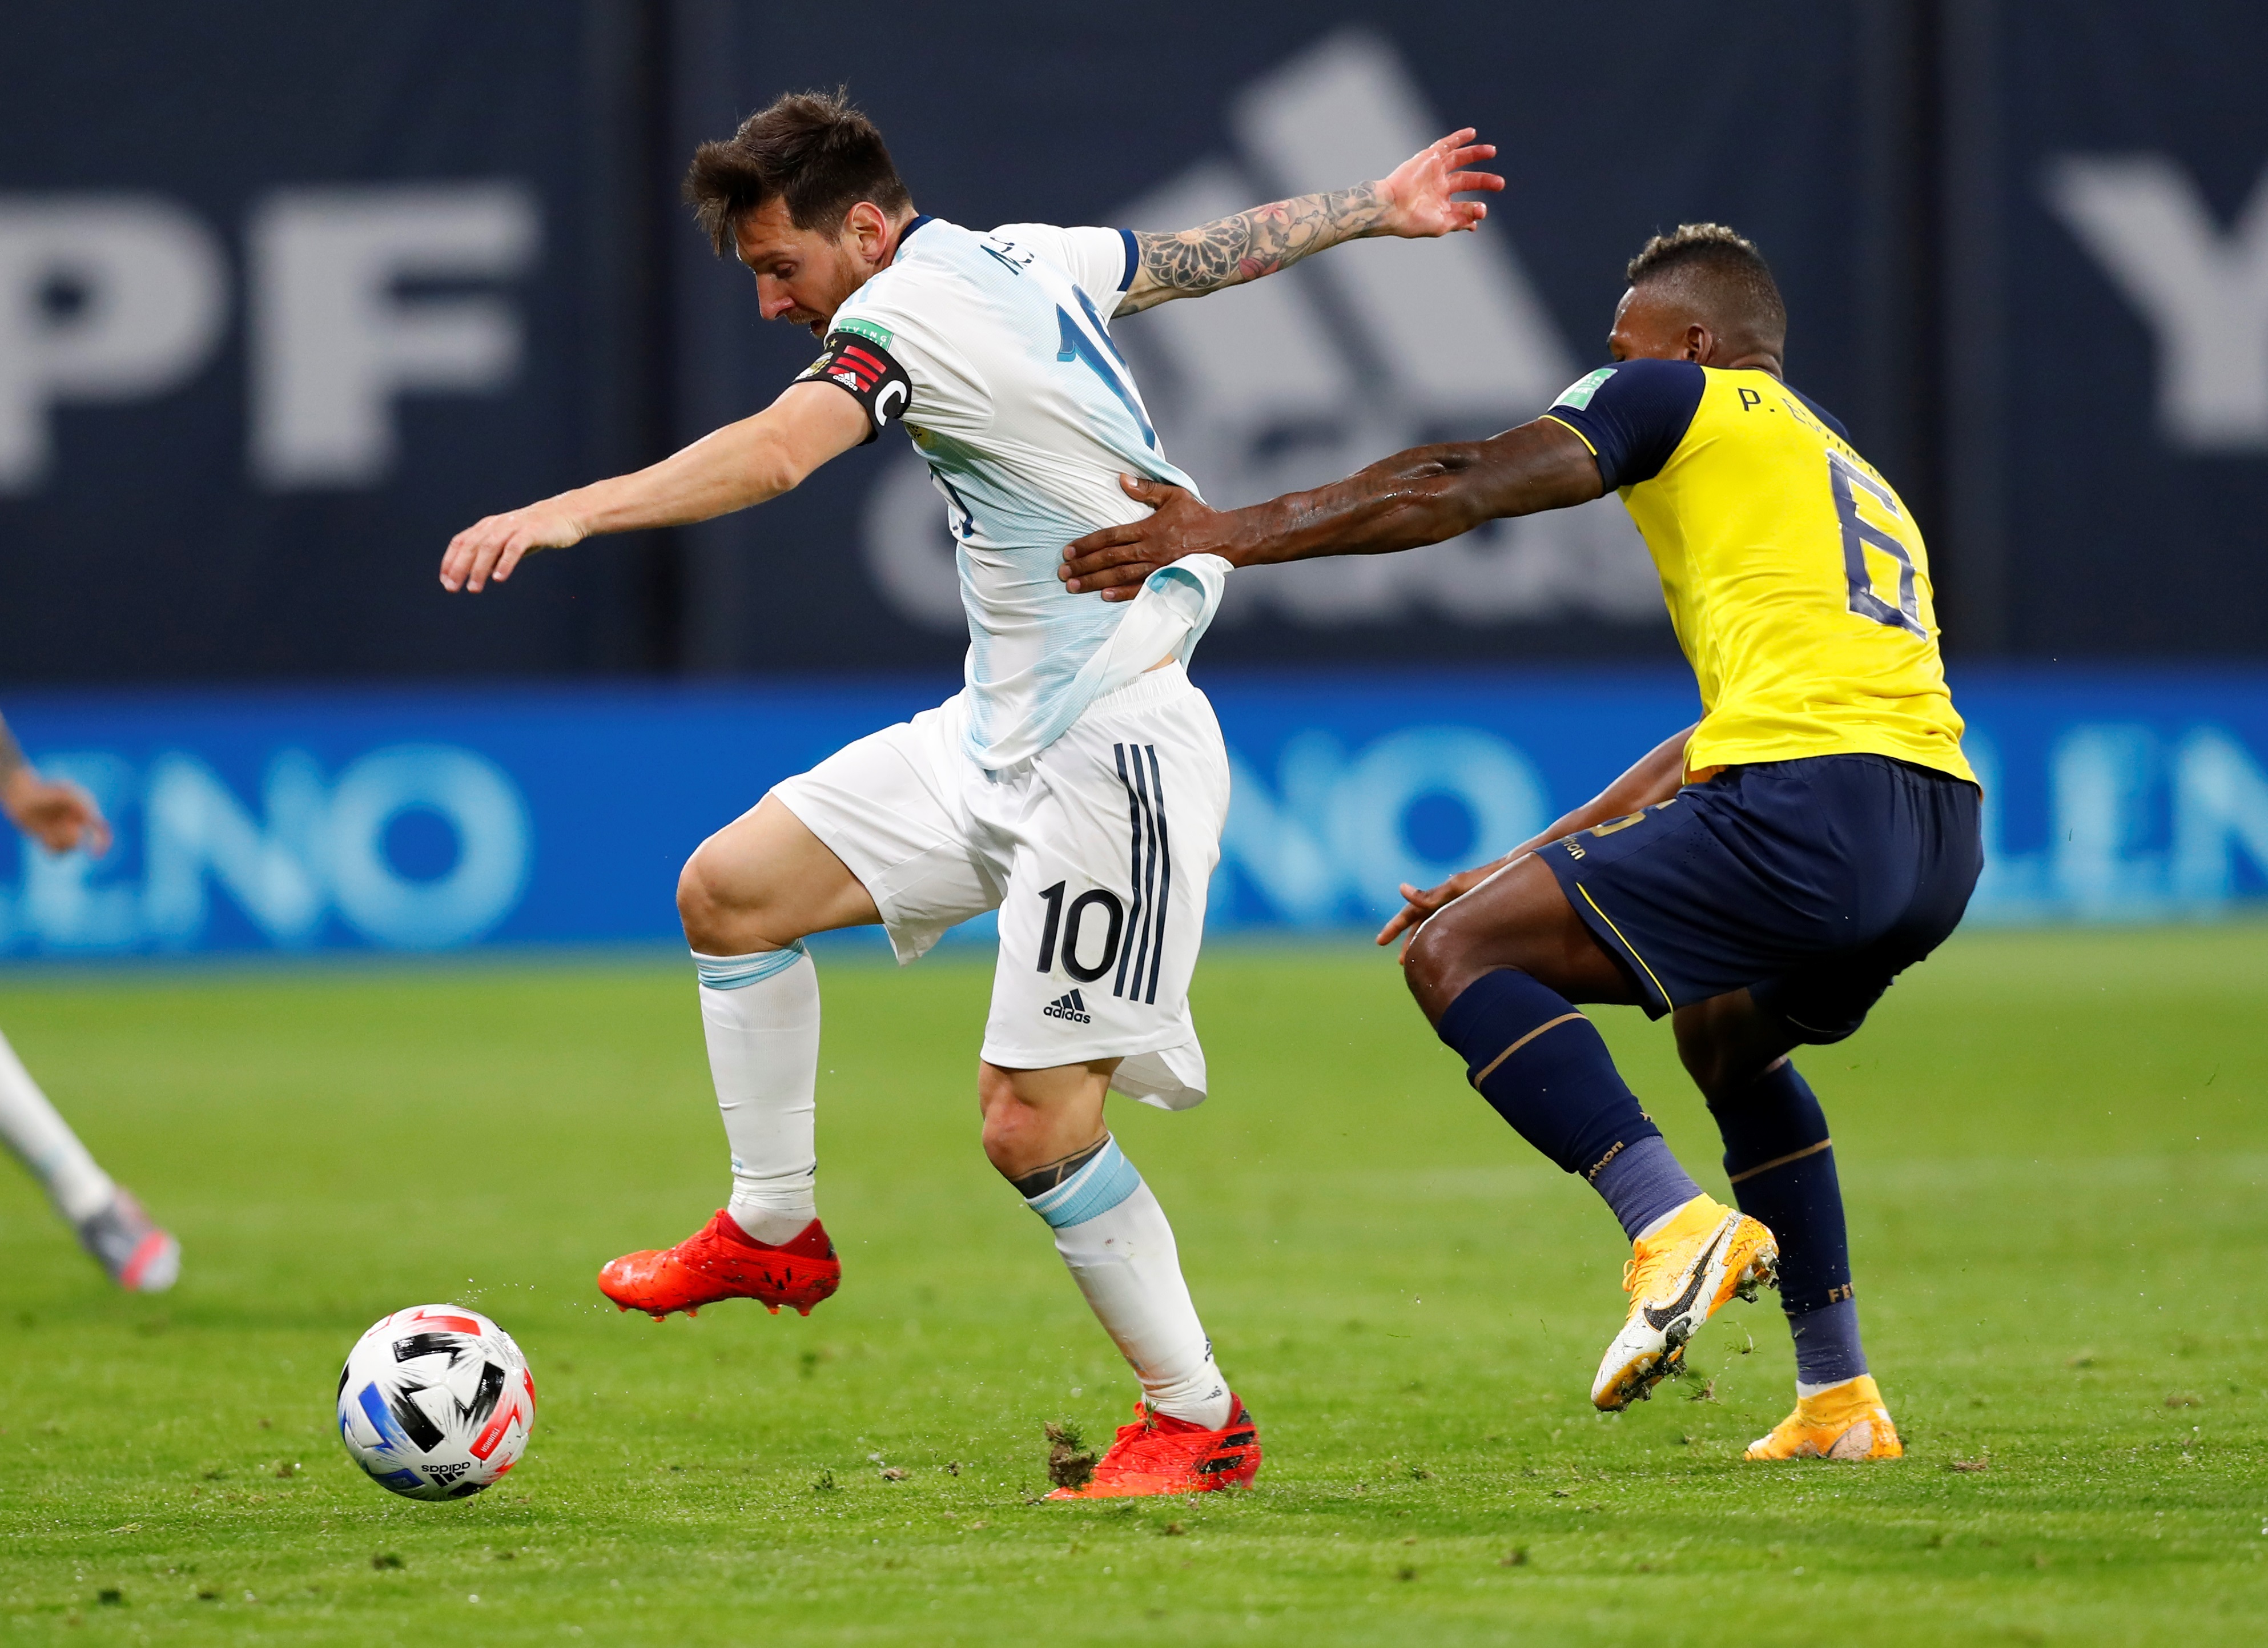 Messi amplió su leyenda en sufrido triunfo de Argentina sobre Ecuador